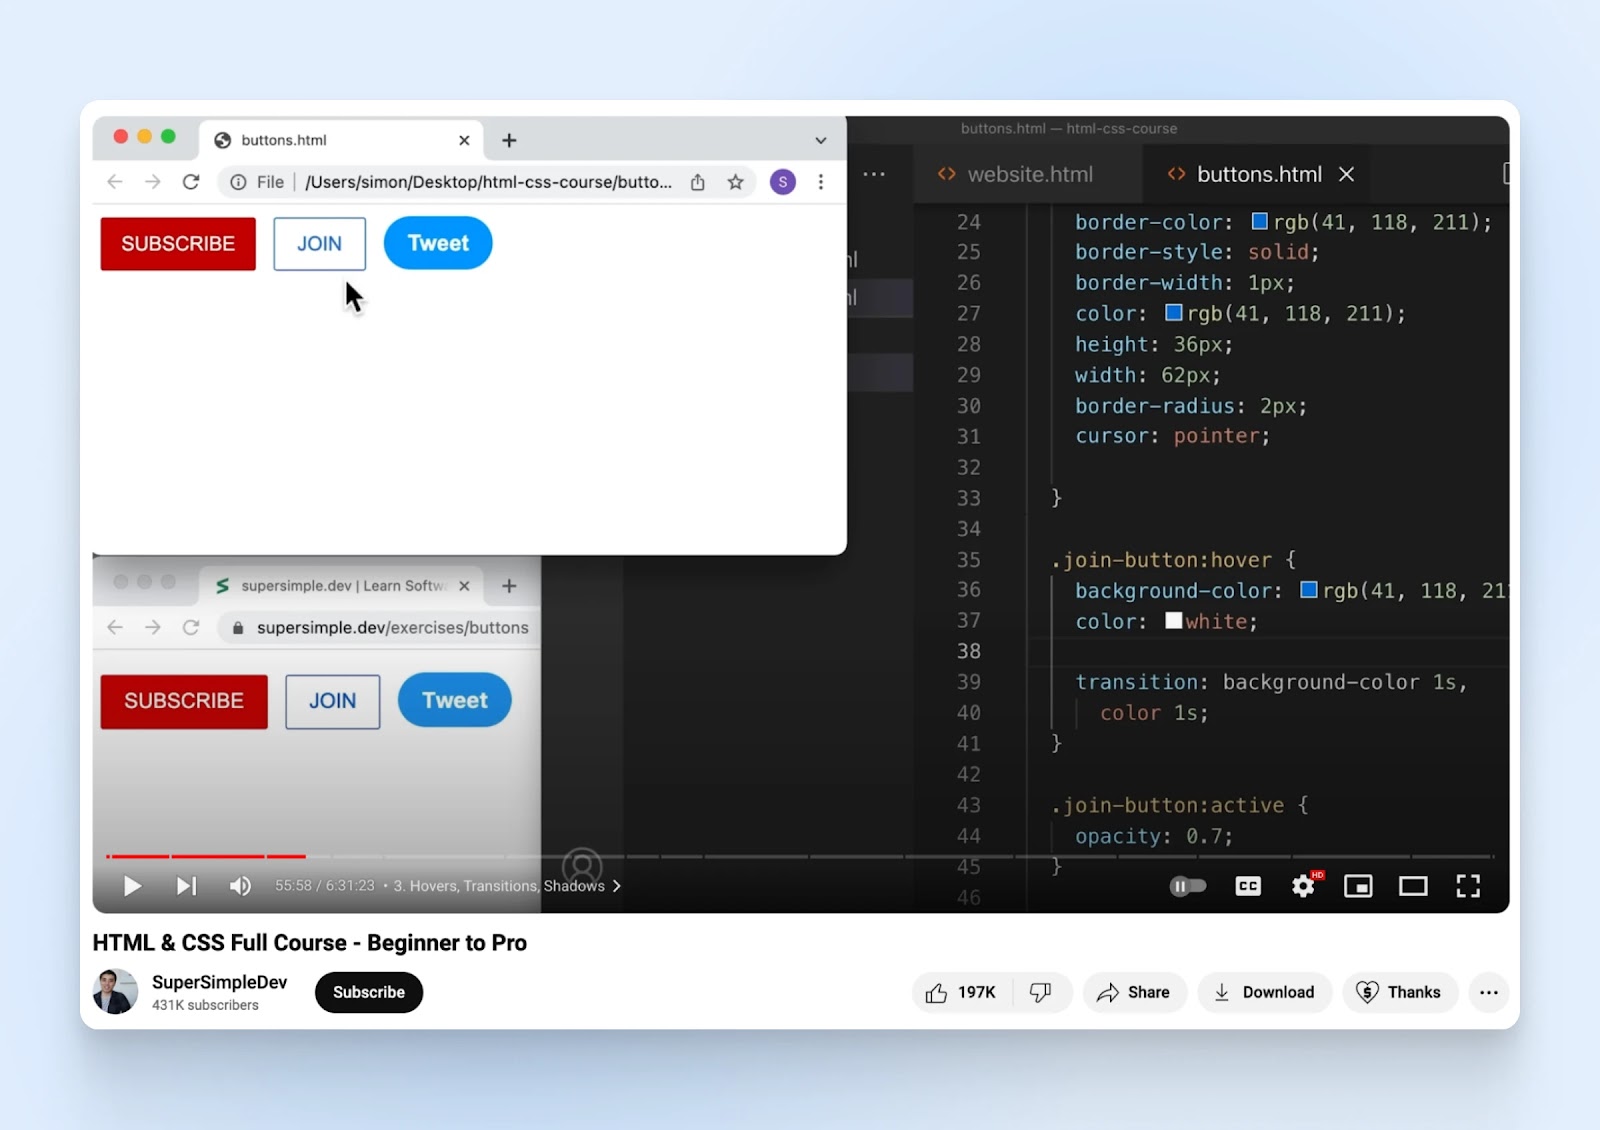 El vídeo de YouTube de SuperSimpleDev "Curso completo de HTML y CSS: principiante a profesional" se detuvo en la marca de 55 minutos.